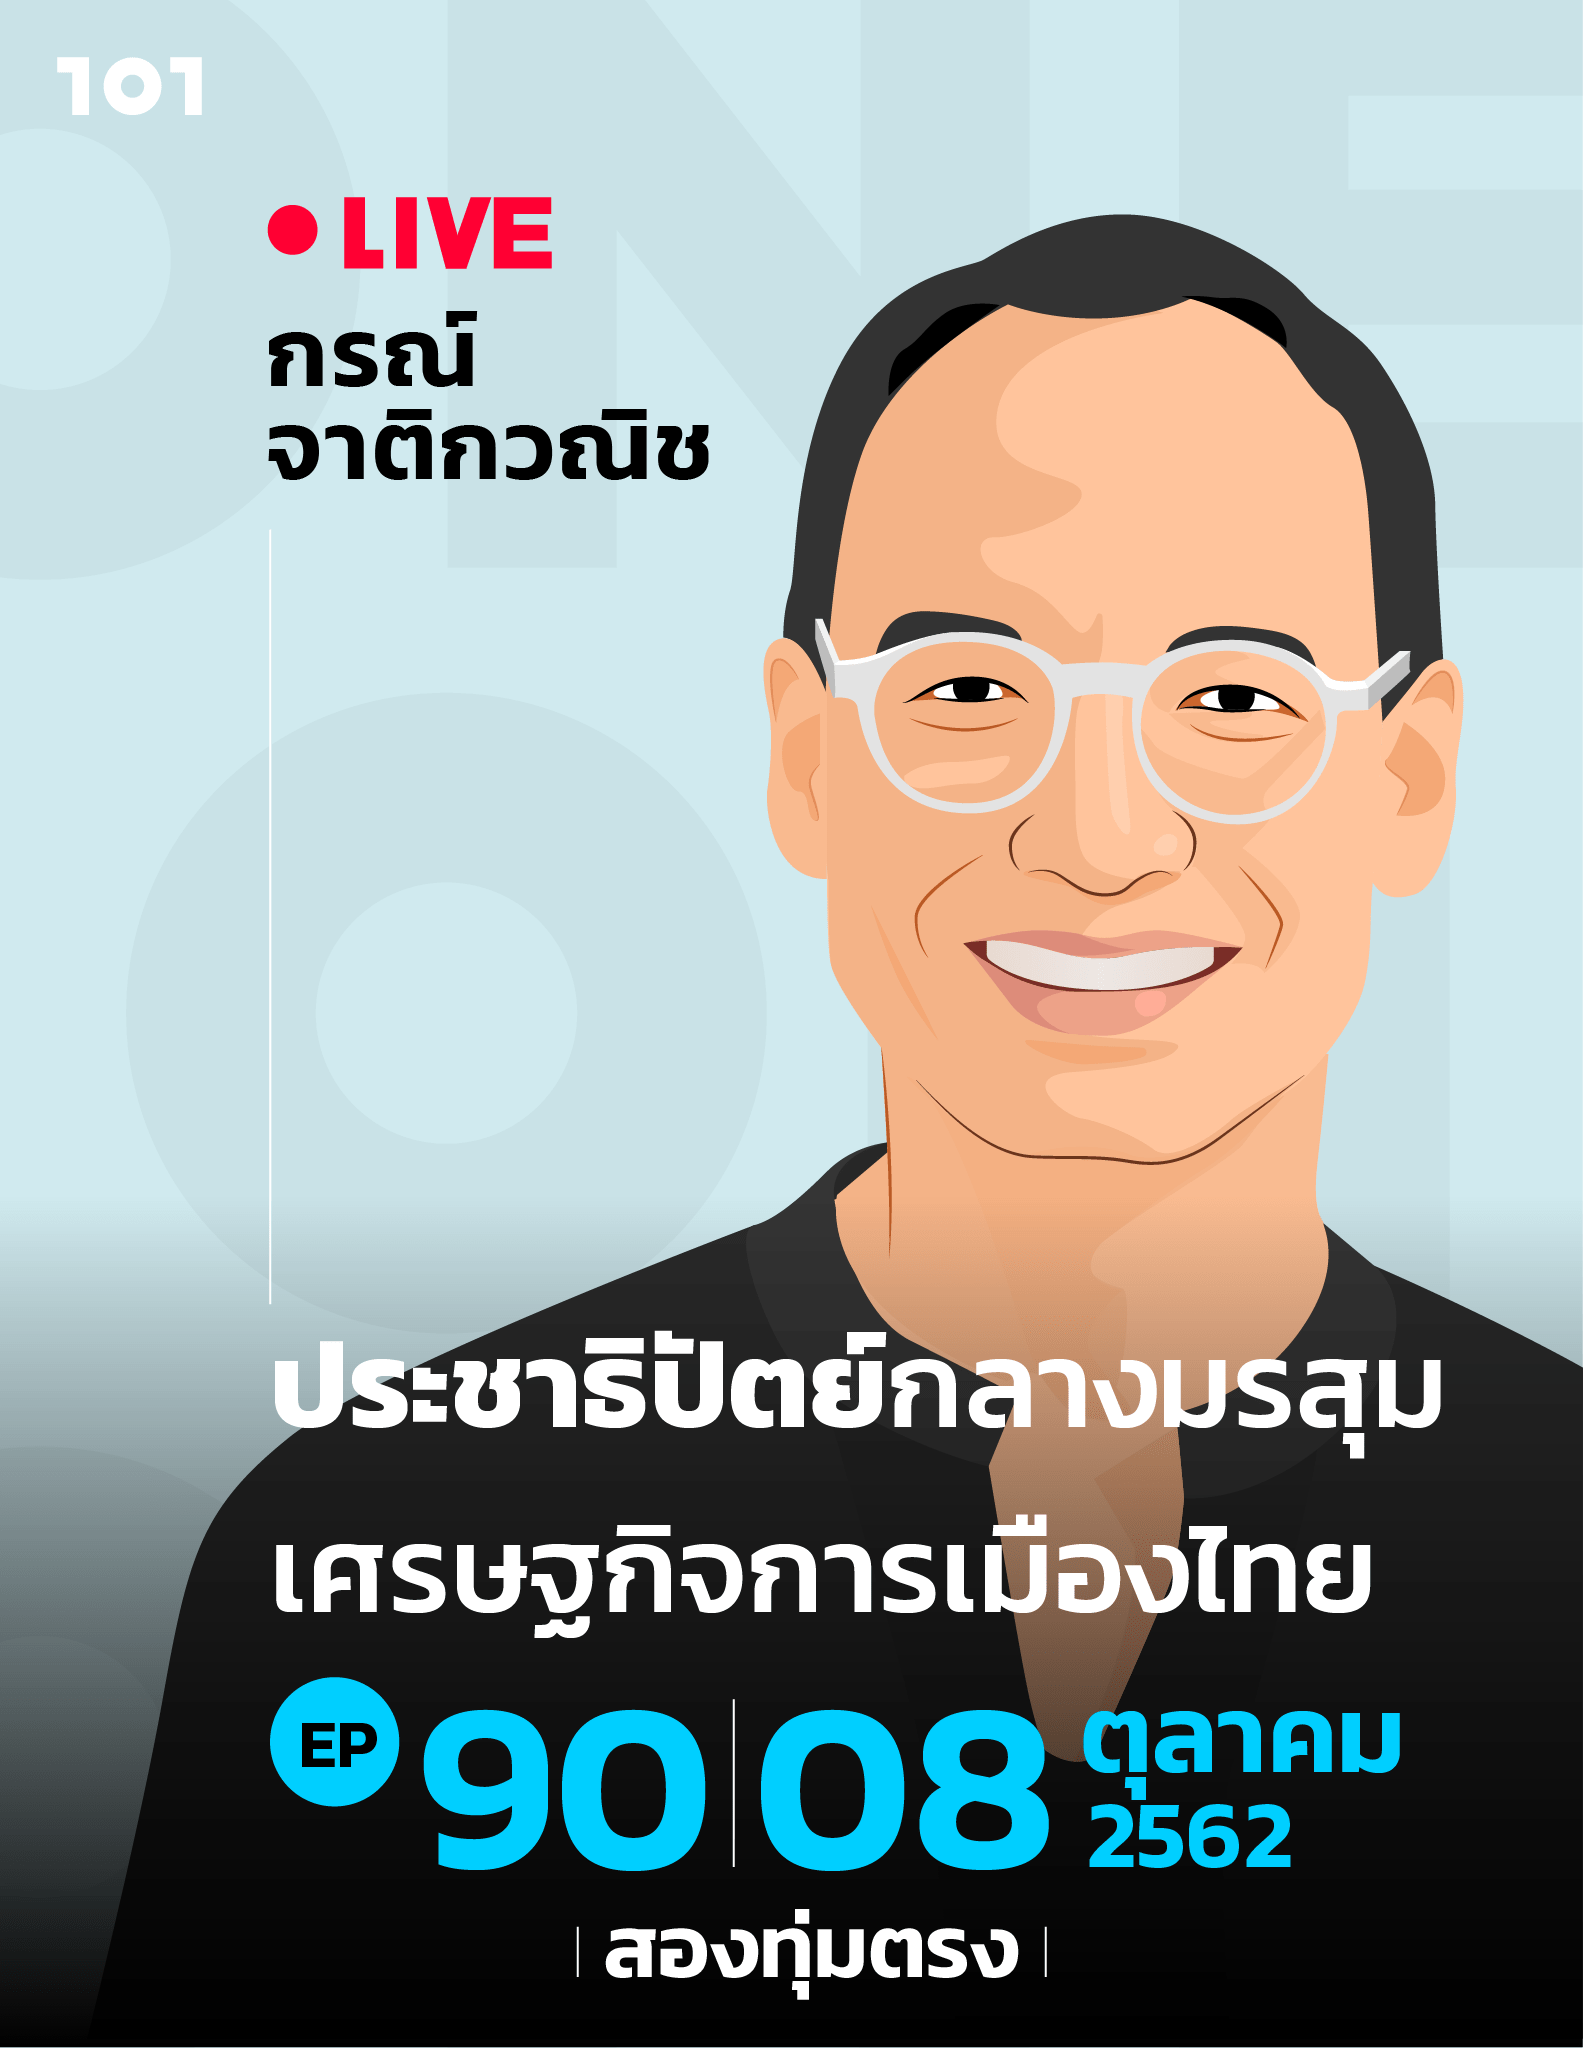 101 One-On-One EP.90 "ประชาธิปัตย์กลางมรสุมเศรษฐกิจการเมืองไทย" กับ กรณ์ จาติกวณิช